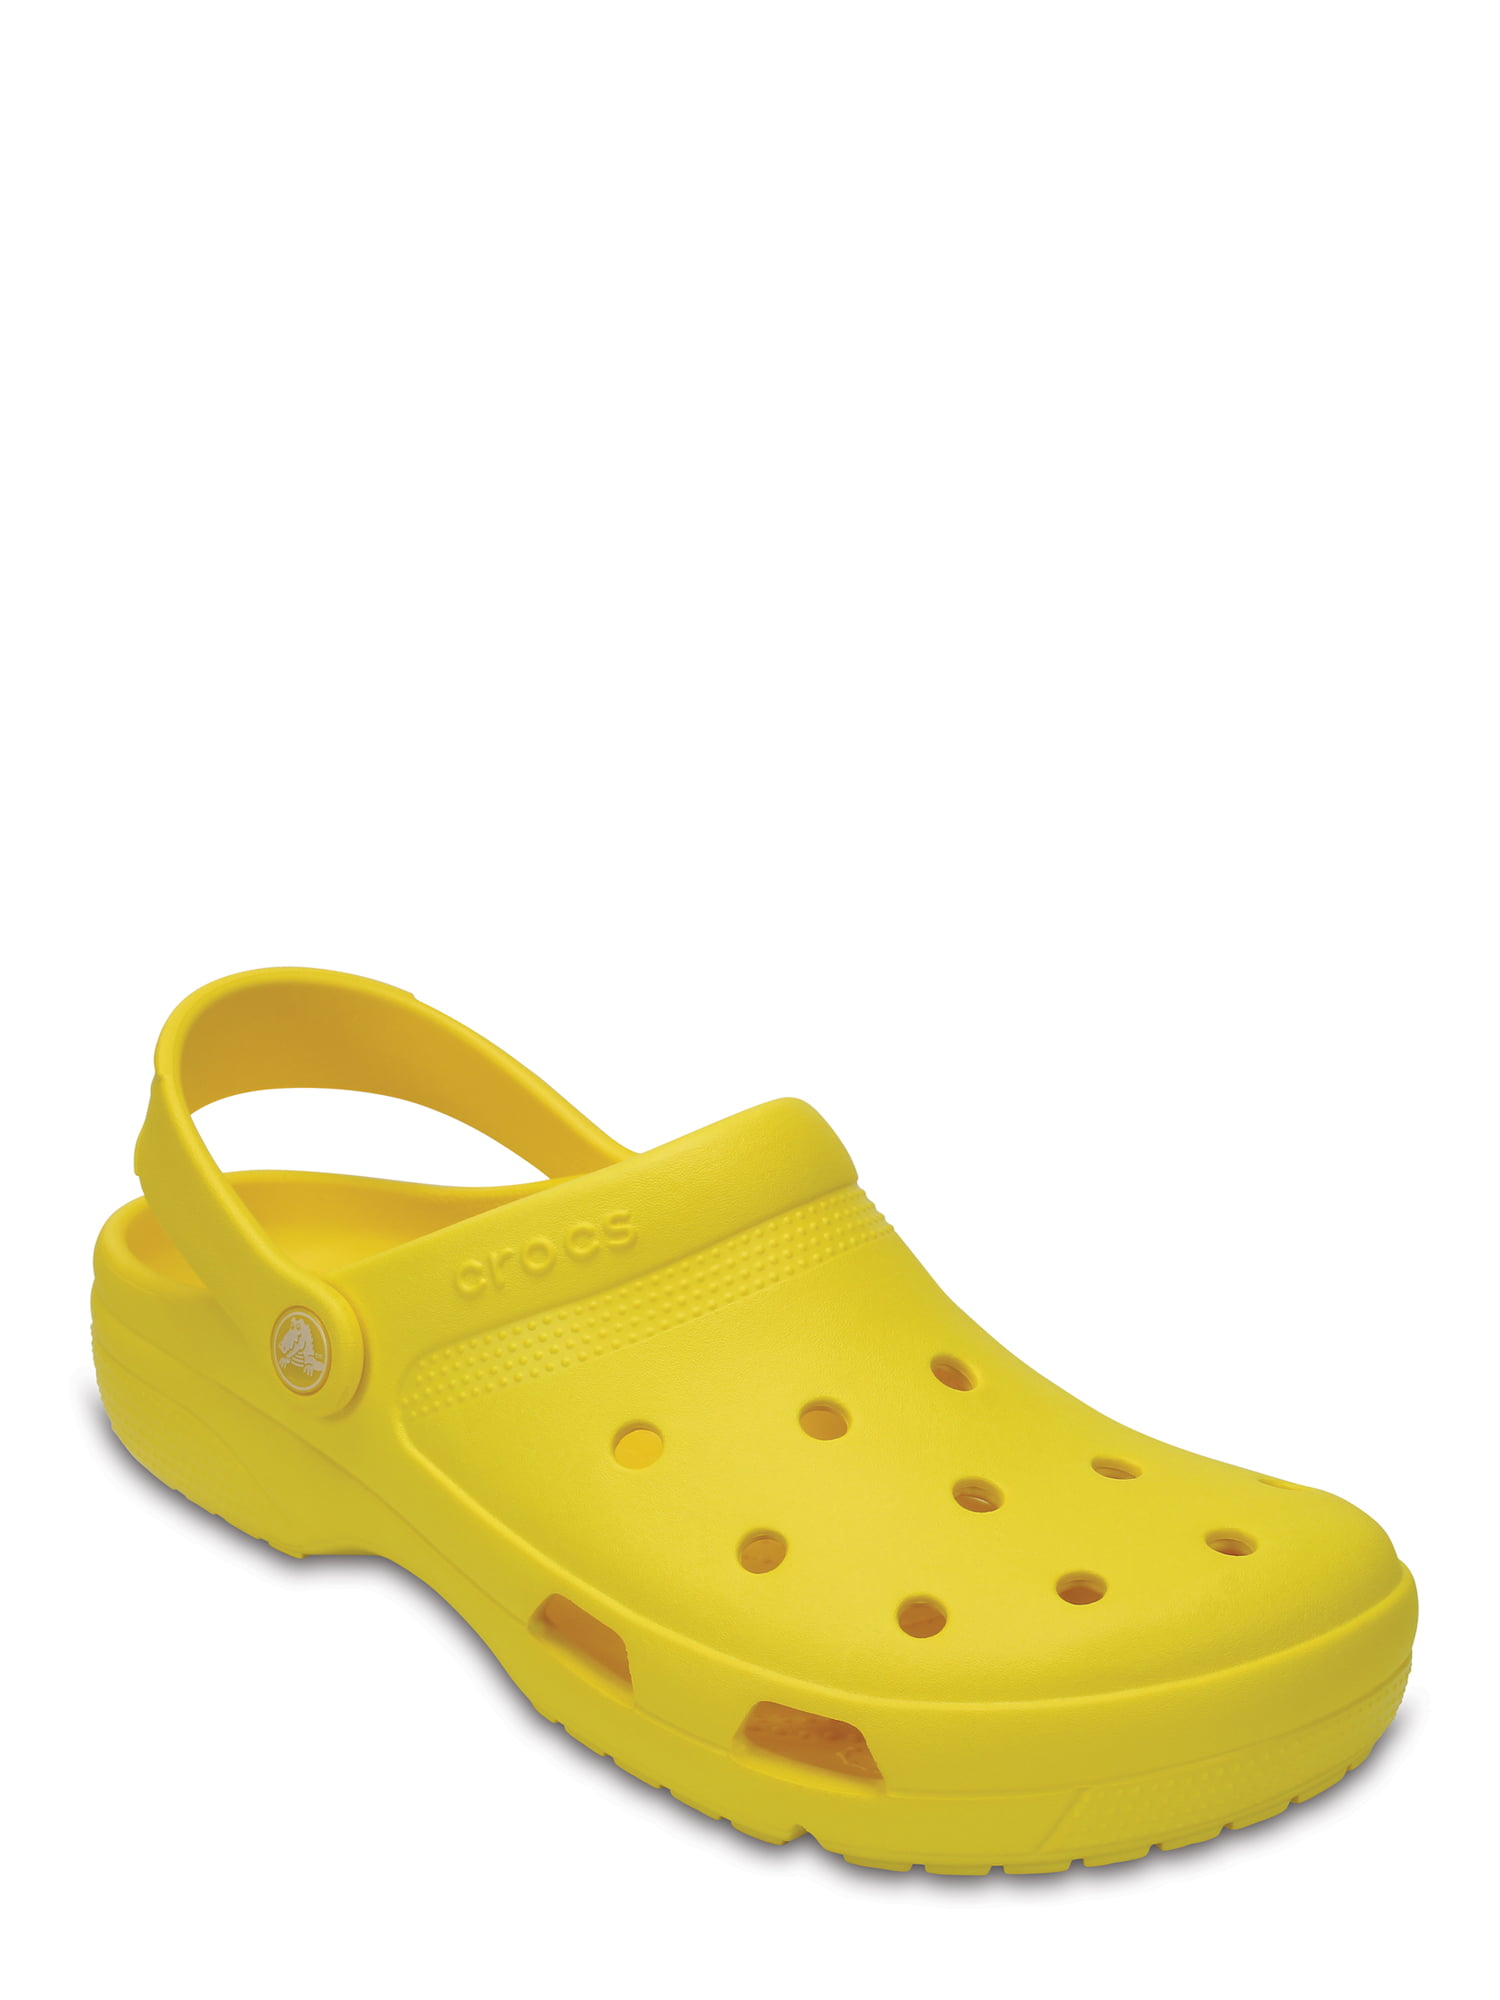 yellow crocs walmart